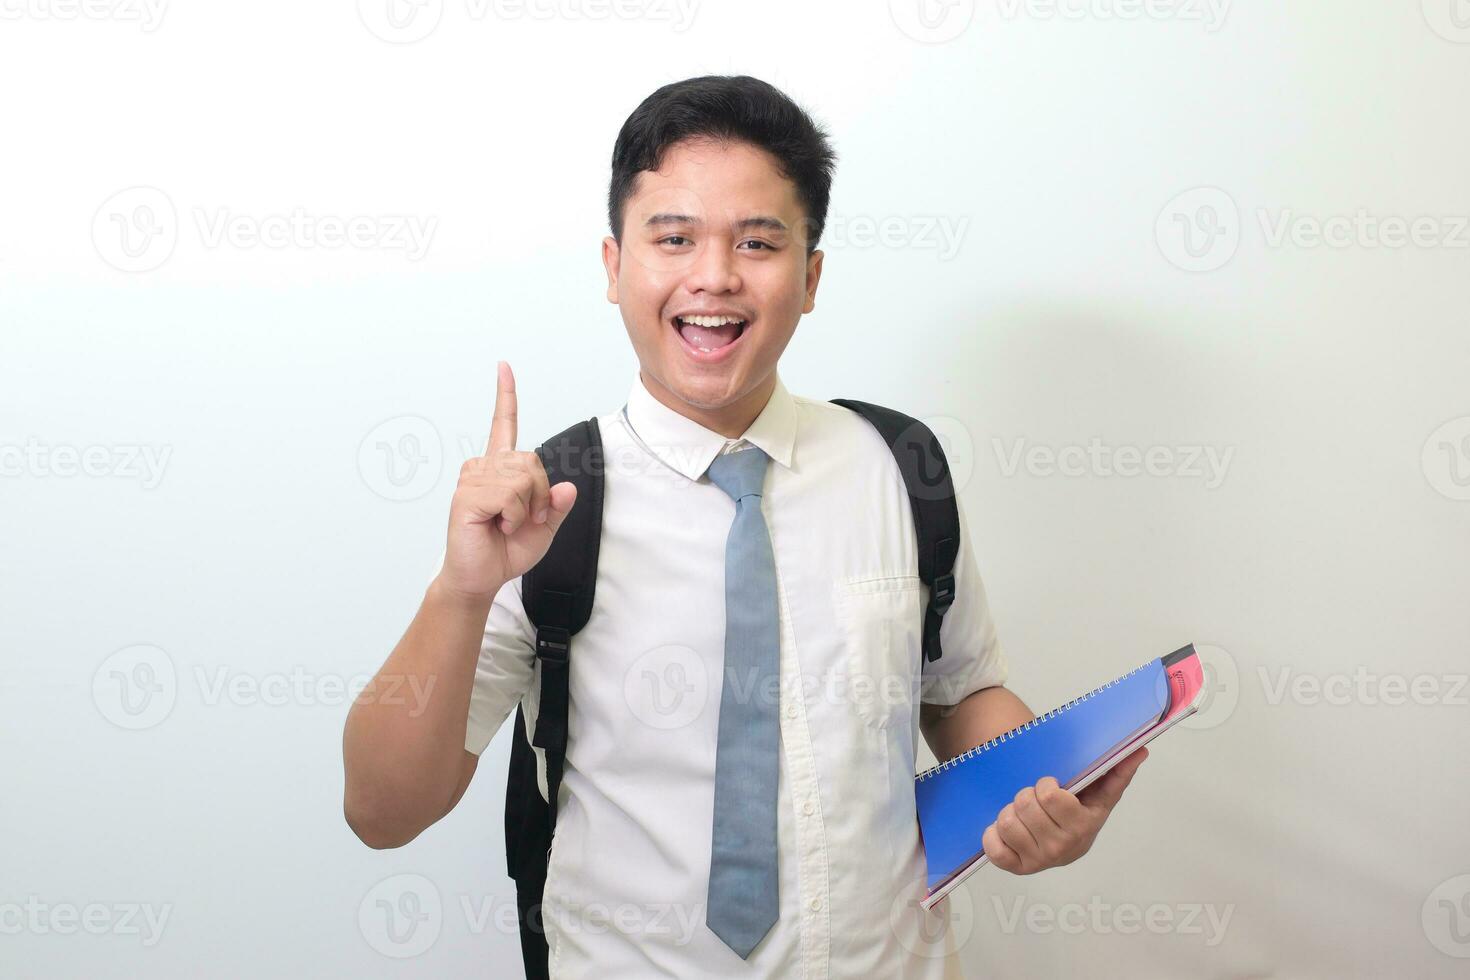 indonesisch Senior hoch Schule Schüler tragen Weiß Hemd Uniform mit grau Krawatte halten etwas Bücher, lächelnd und zeigen oben mit Finger erinnern etwas. isoliert Bild auf Weiß Hintergrund foto